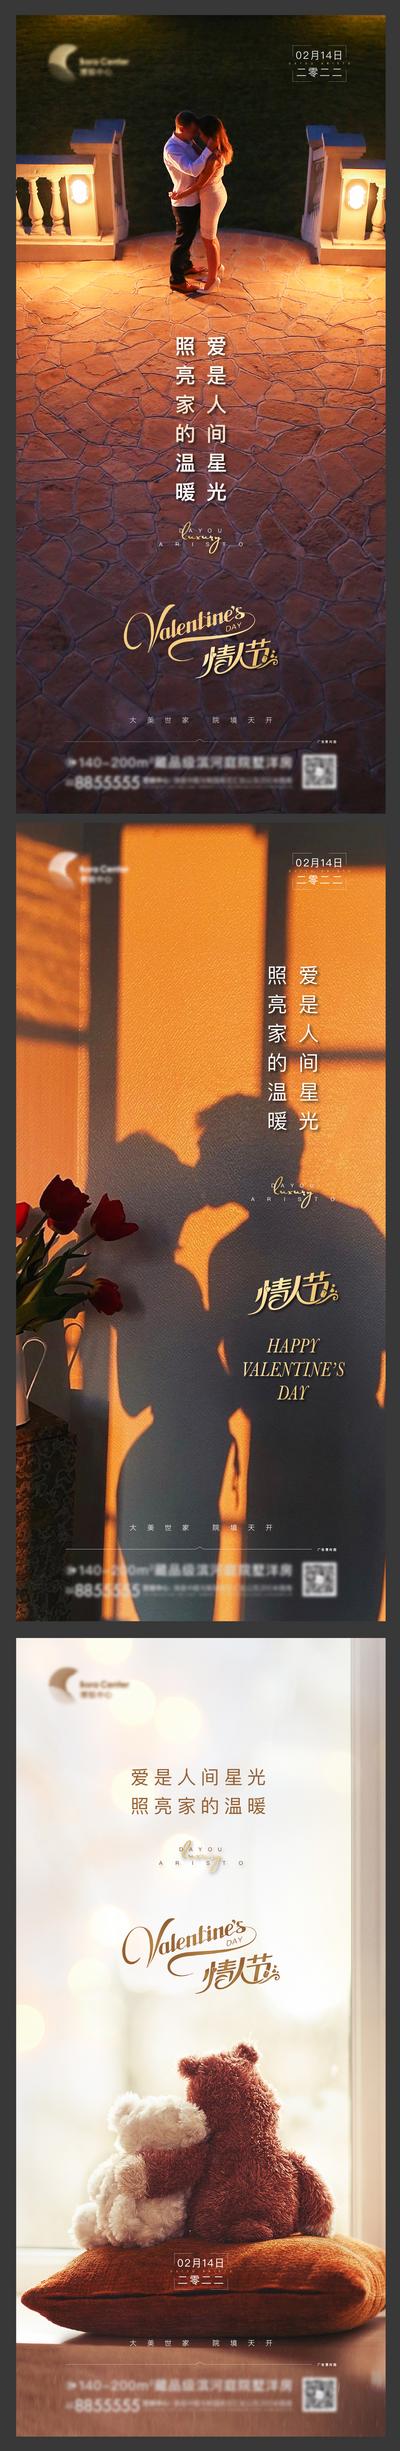 南门网 海报 公历节日 情人节 浪漫 情侣 熊